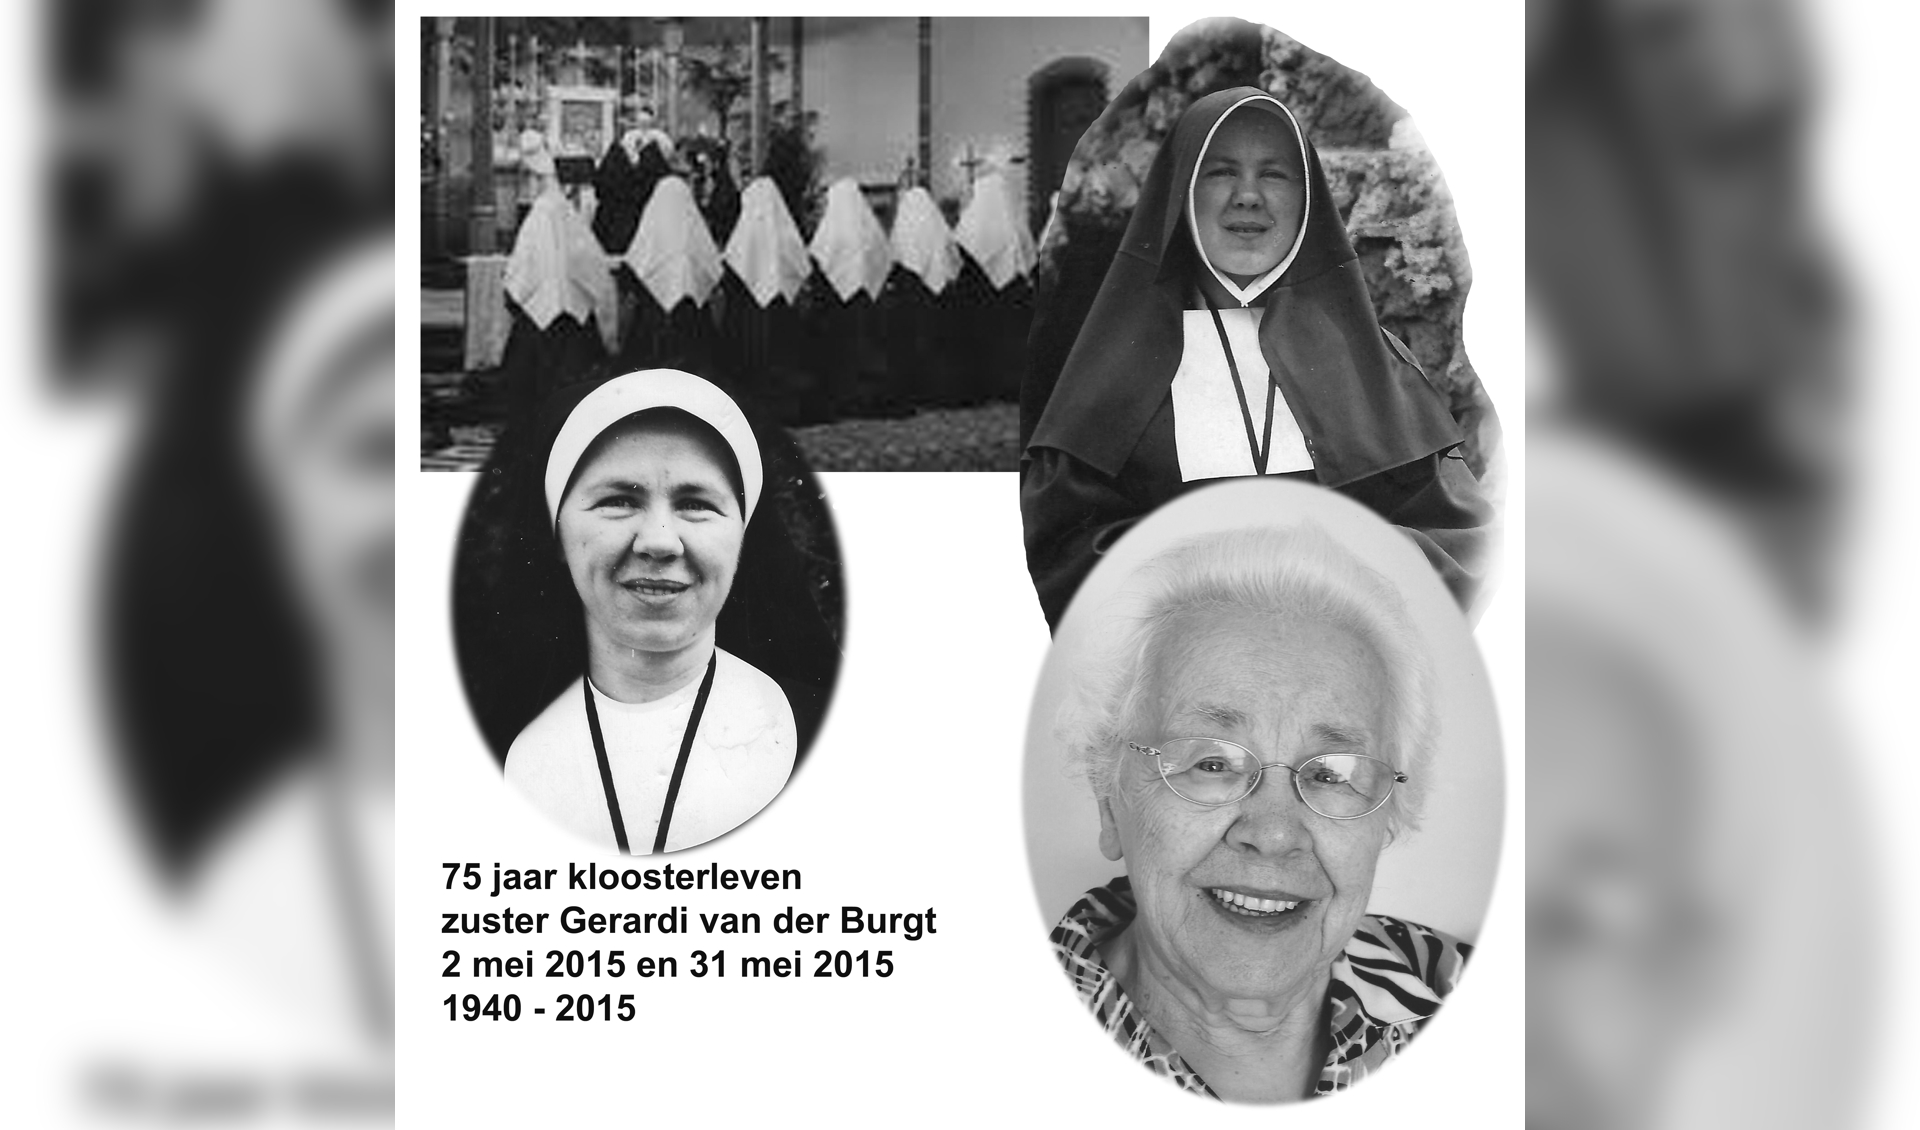 75 jaar kloosterleven zuster Gerardi van der Burgt (1920 - 2020).